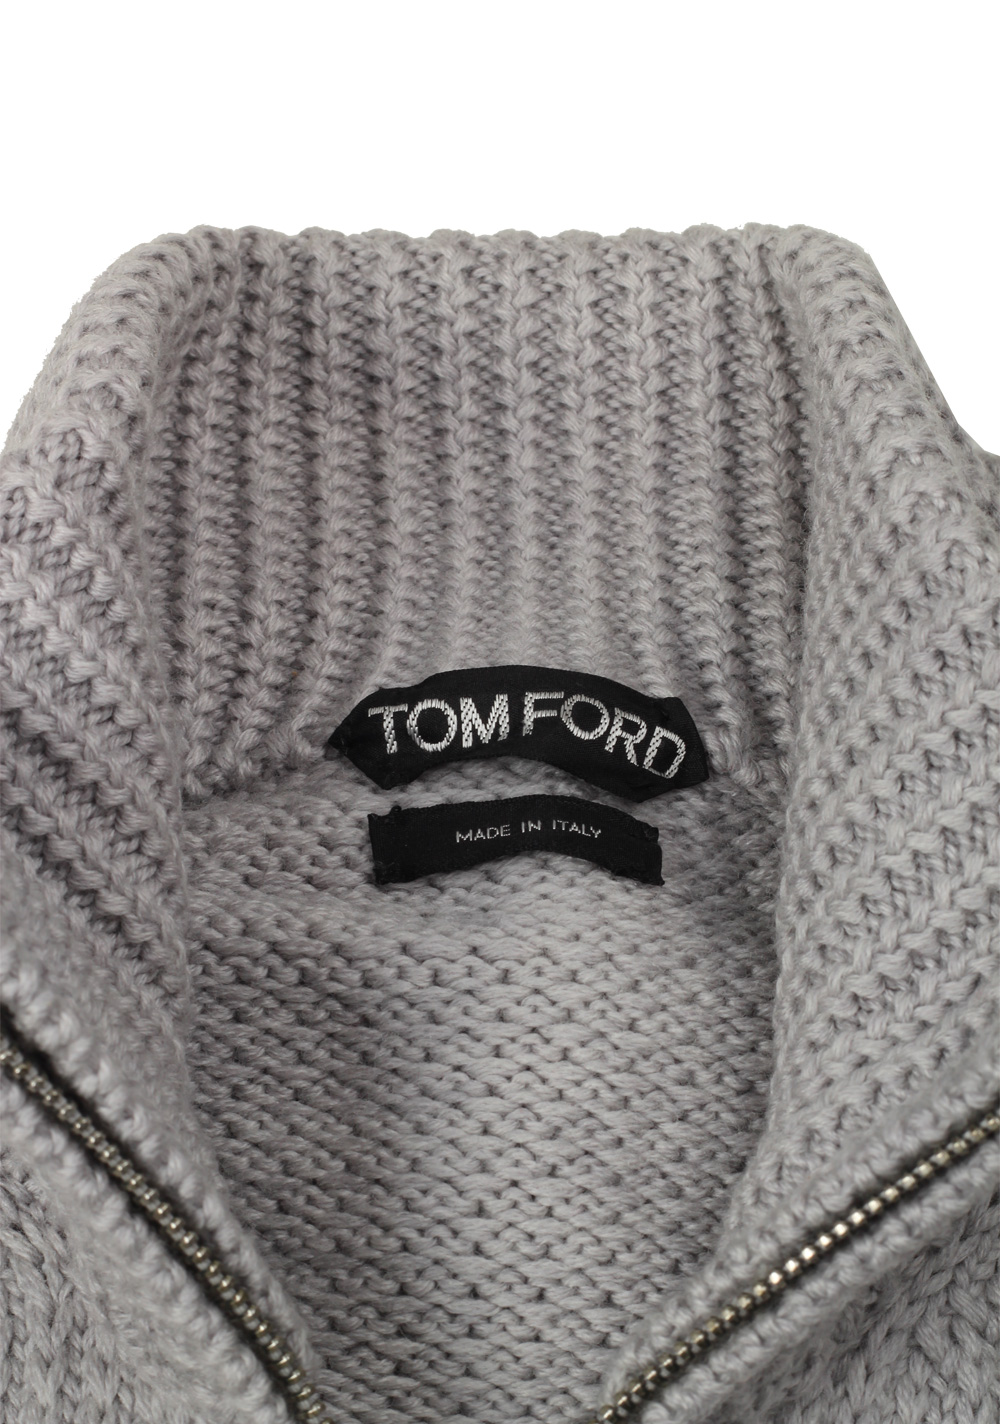 TOM FORD Gray Zipper Cardigan Size 48 / 38R U.S. Wool | Costume Limité